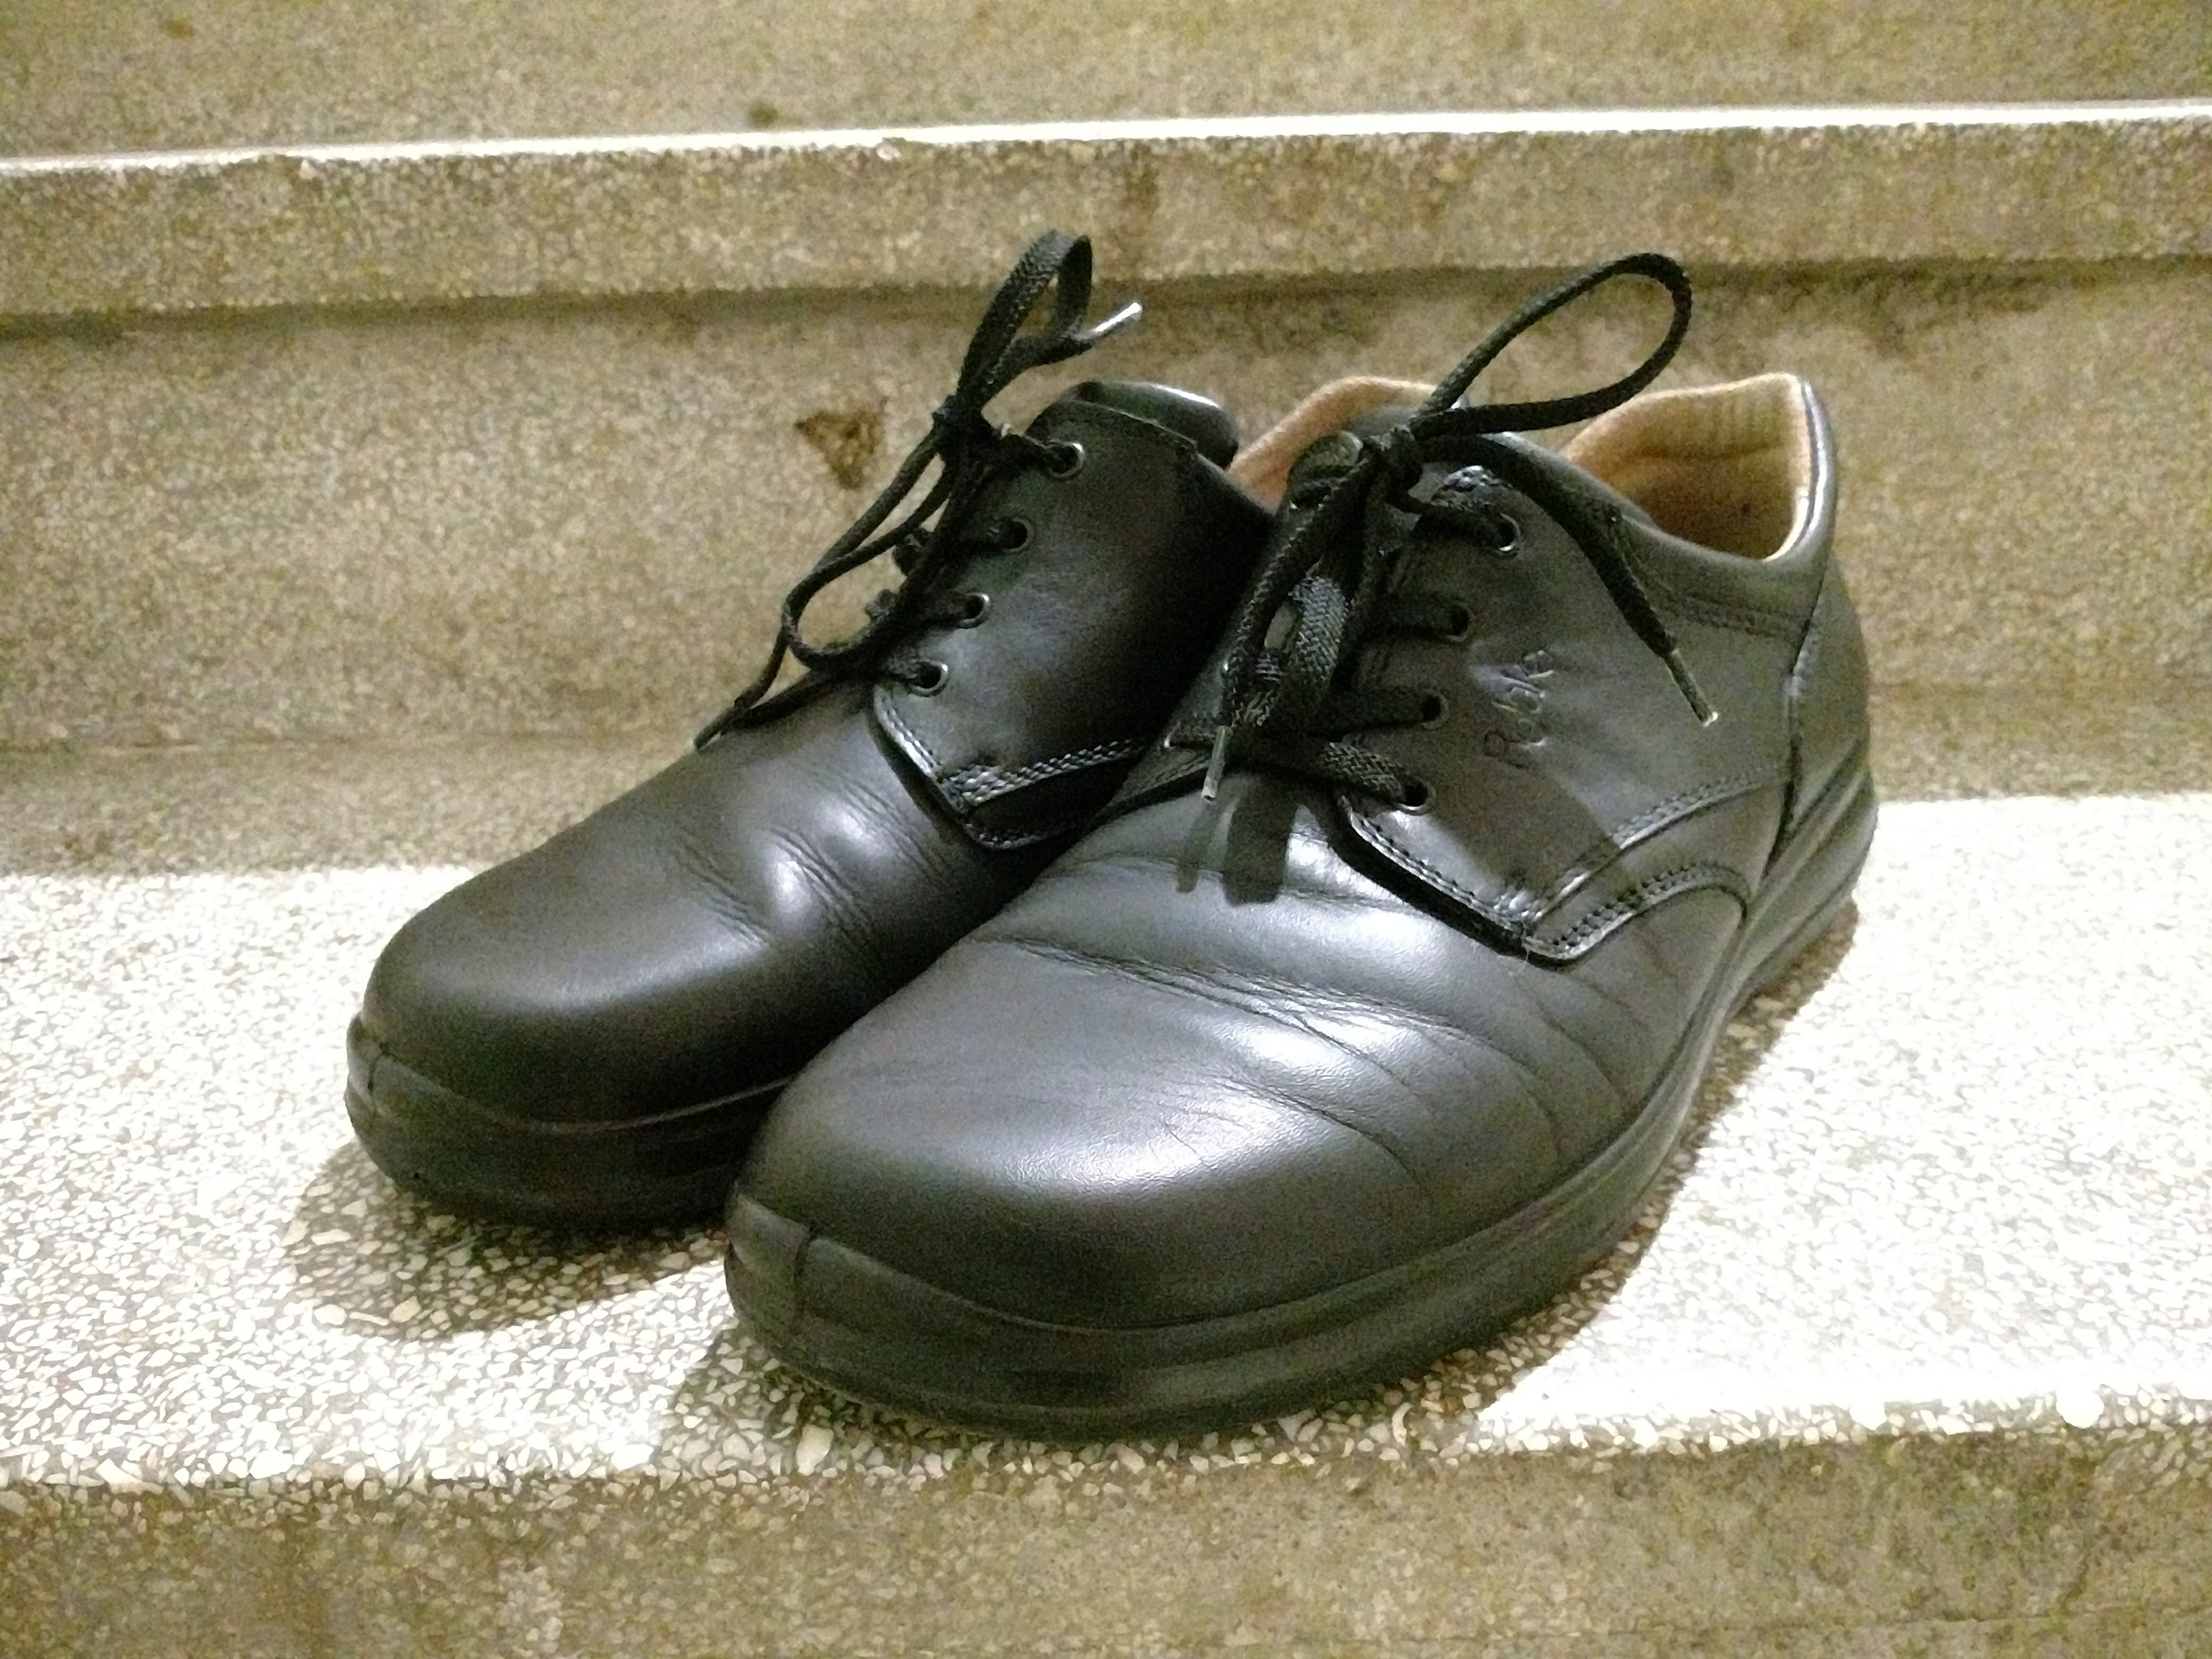 Dani provedeni u policijskim cipelama | by Matt Marenic | Blog:  mattmarenic.com